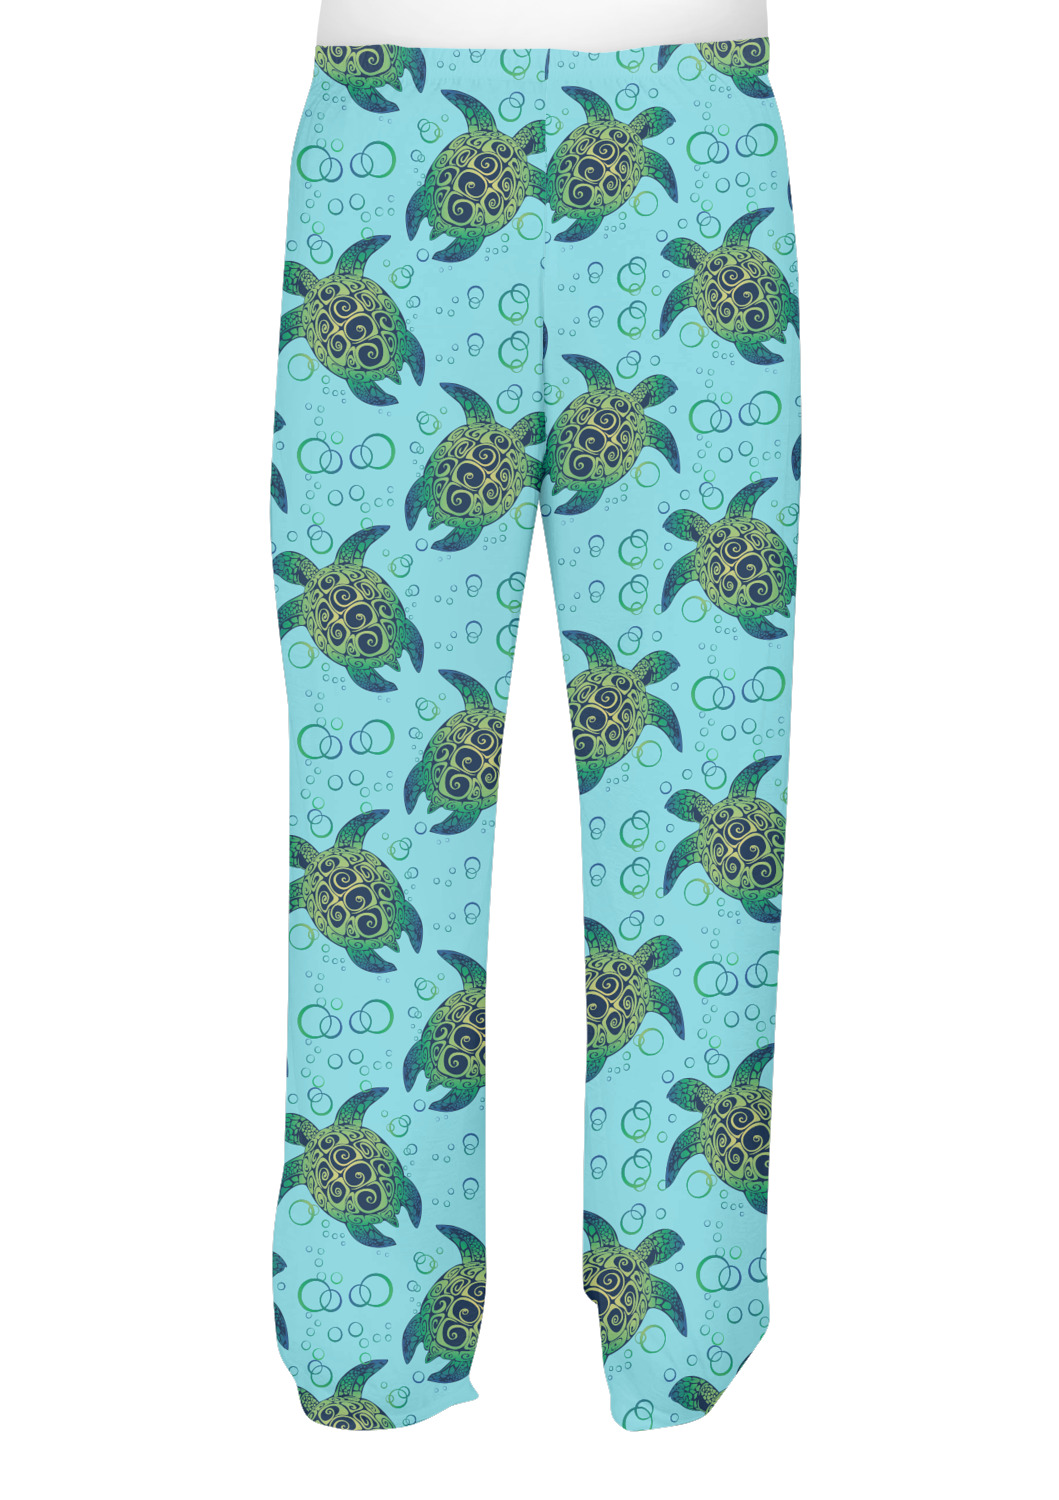 Custom Sea Turtles Mens Pajama Pants